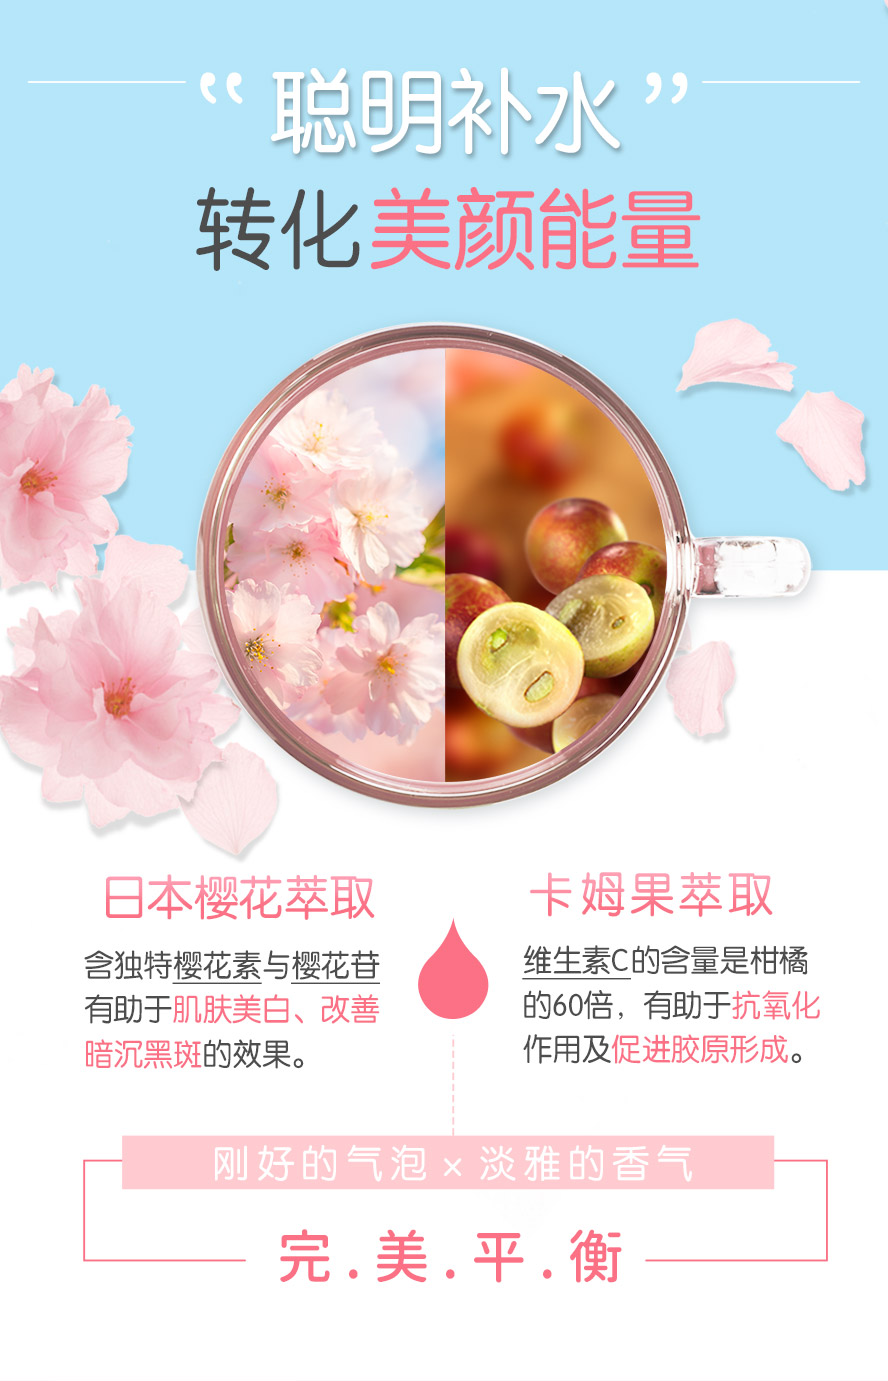 日本樱花萃取物,具抗糖化作用,维持胶原蛋白组织的机能性;卡姆果的维生素C含量为柑橘的60倍,超强抗氧化.